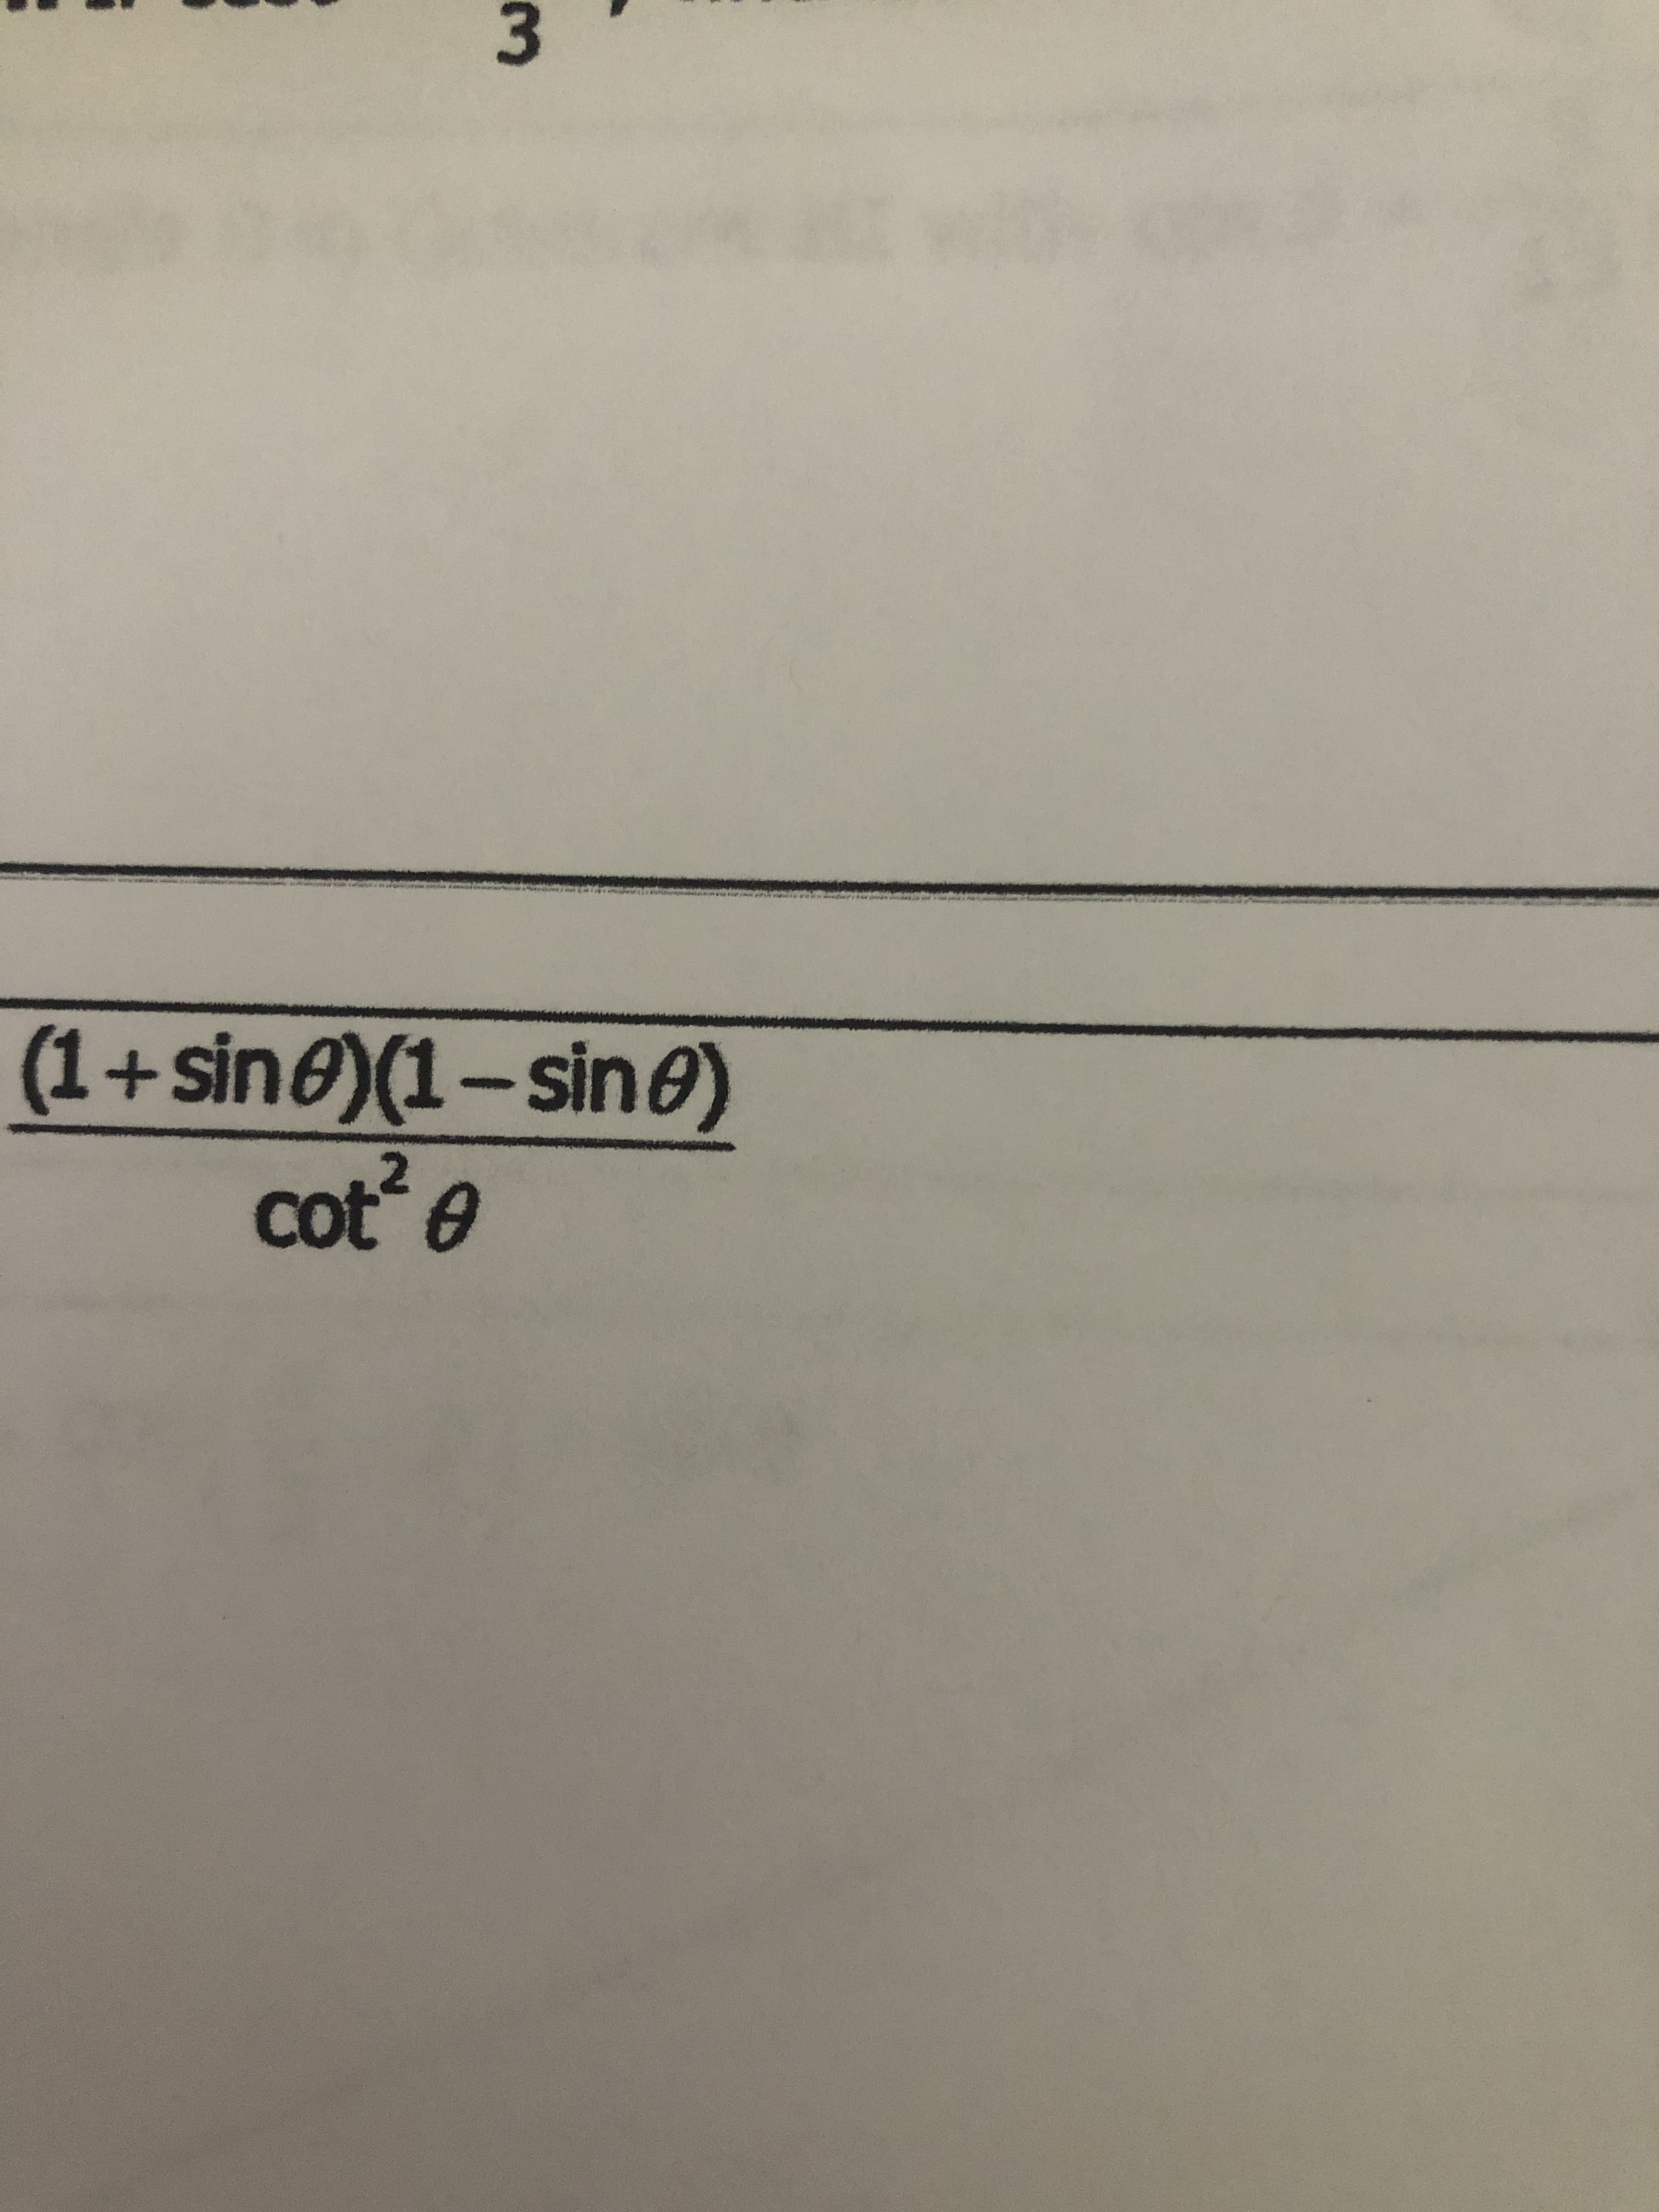 (1+sin@)(1-sine)
cot e
2
